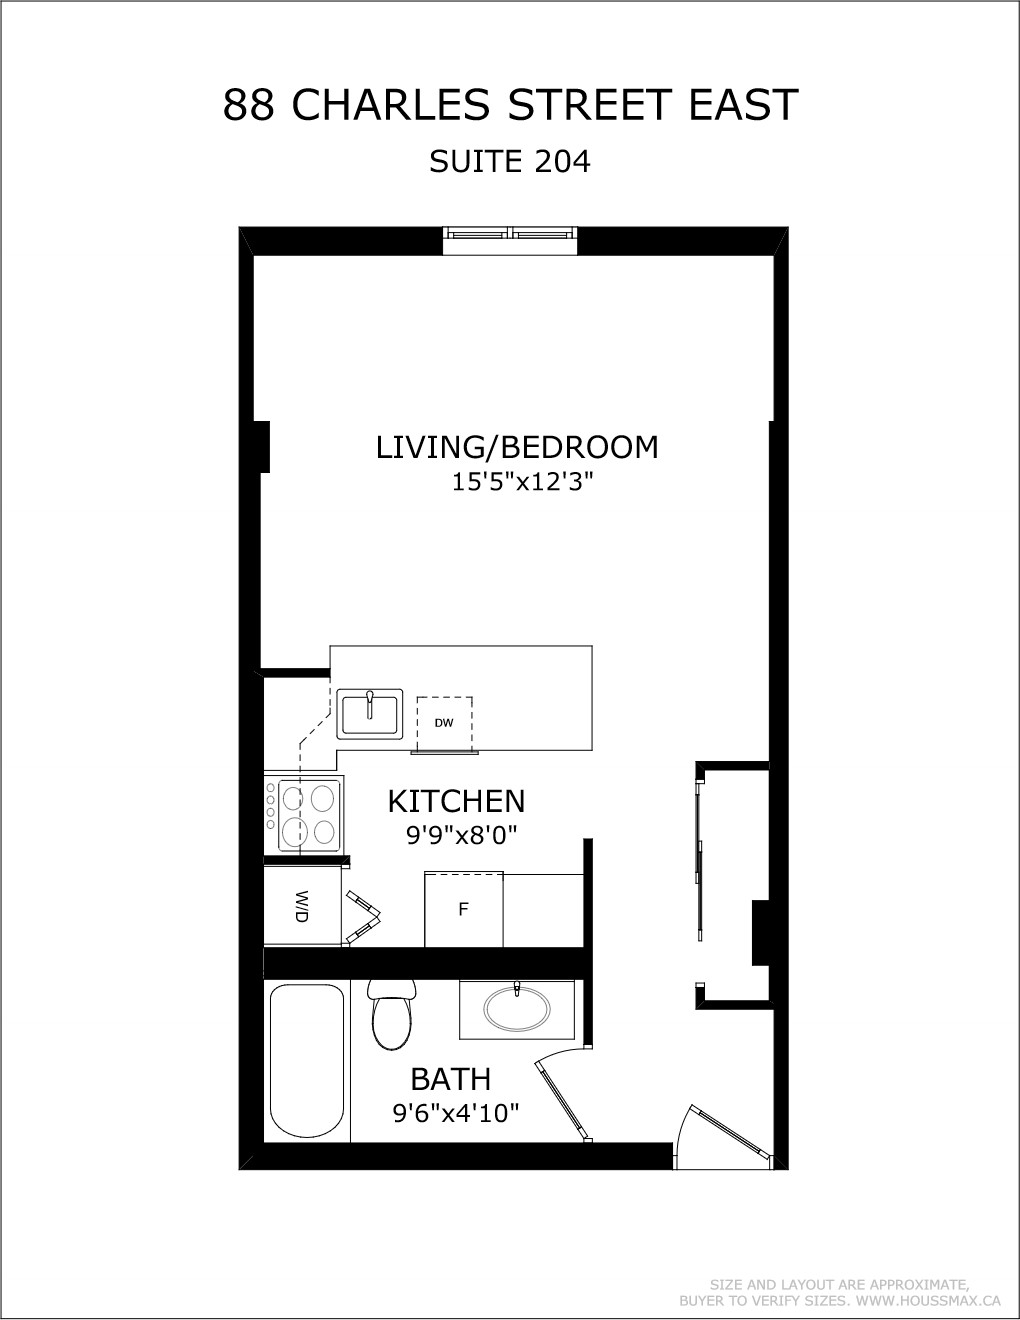 Floor plans for 88 Charles St E Unit 204.